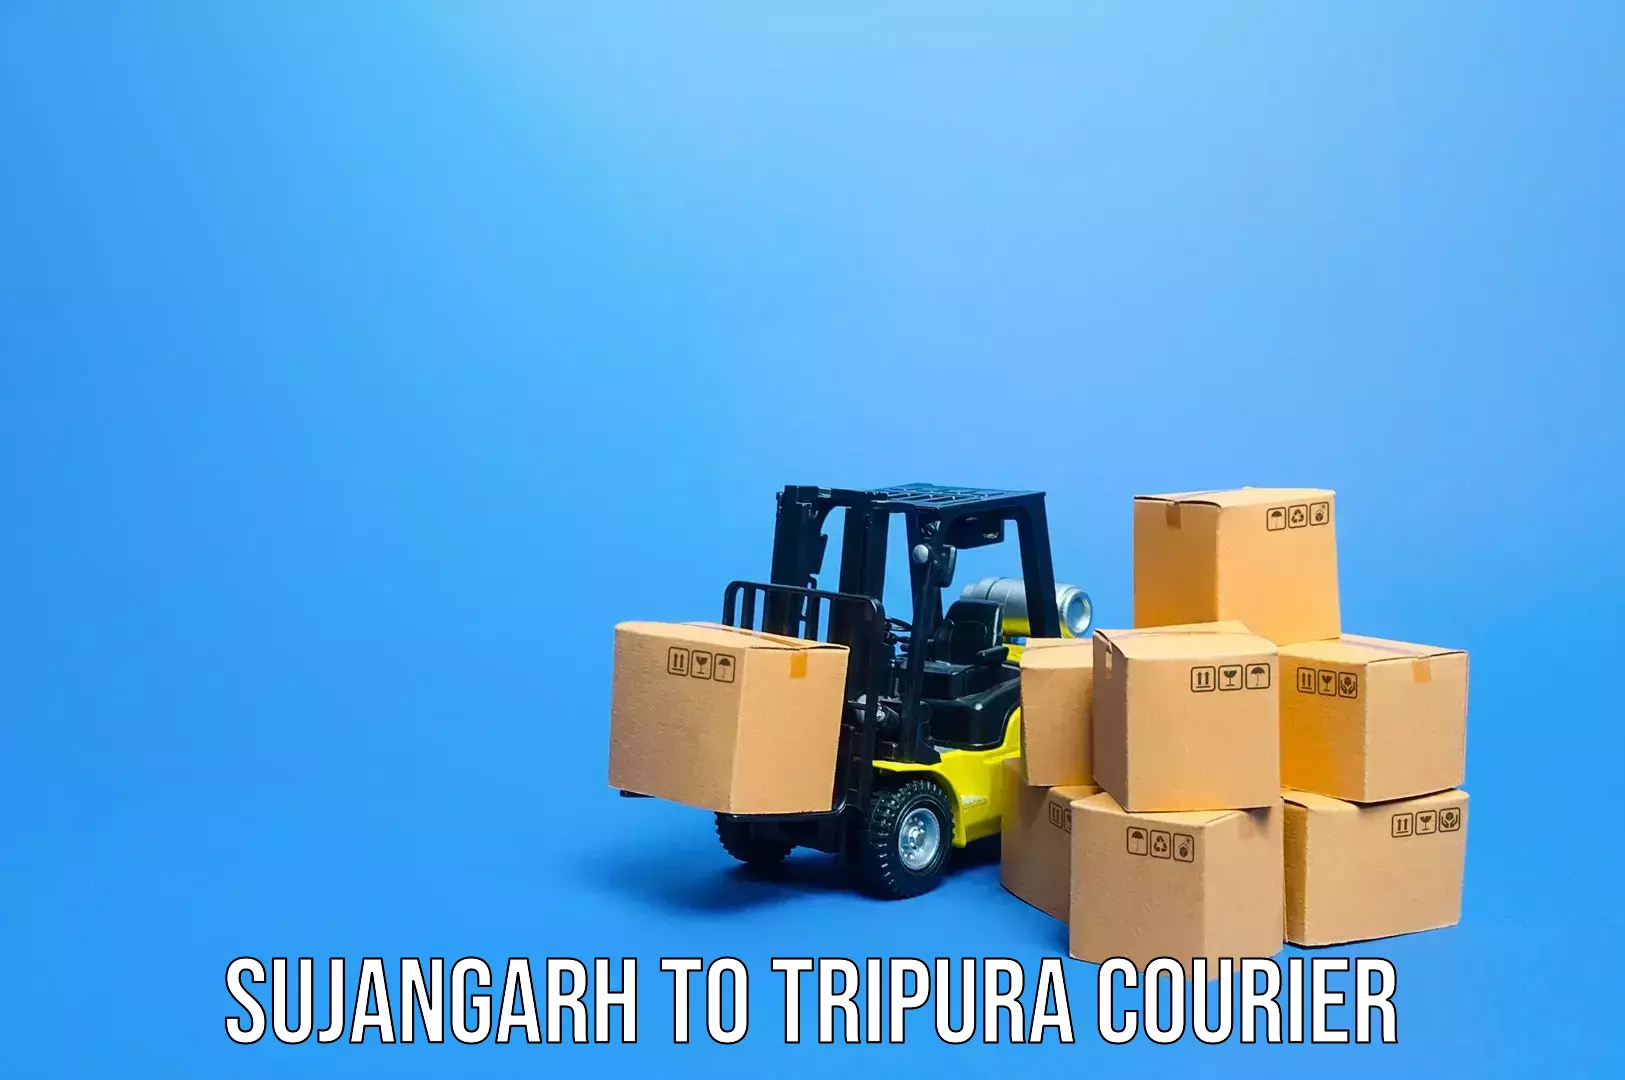 Baggage transport scheduler Sujangarh to Tripura